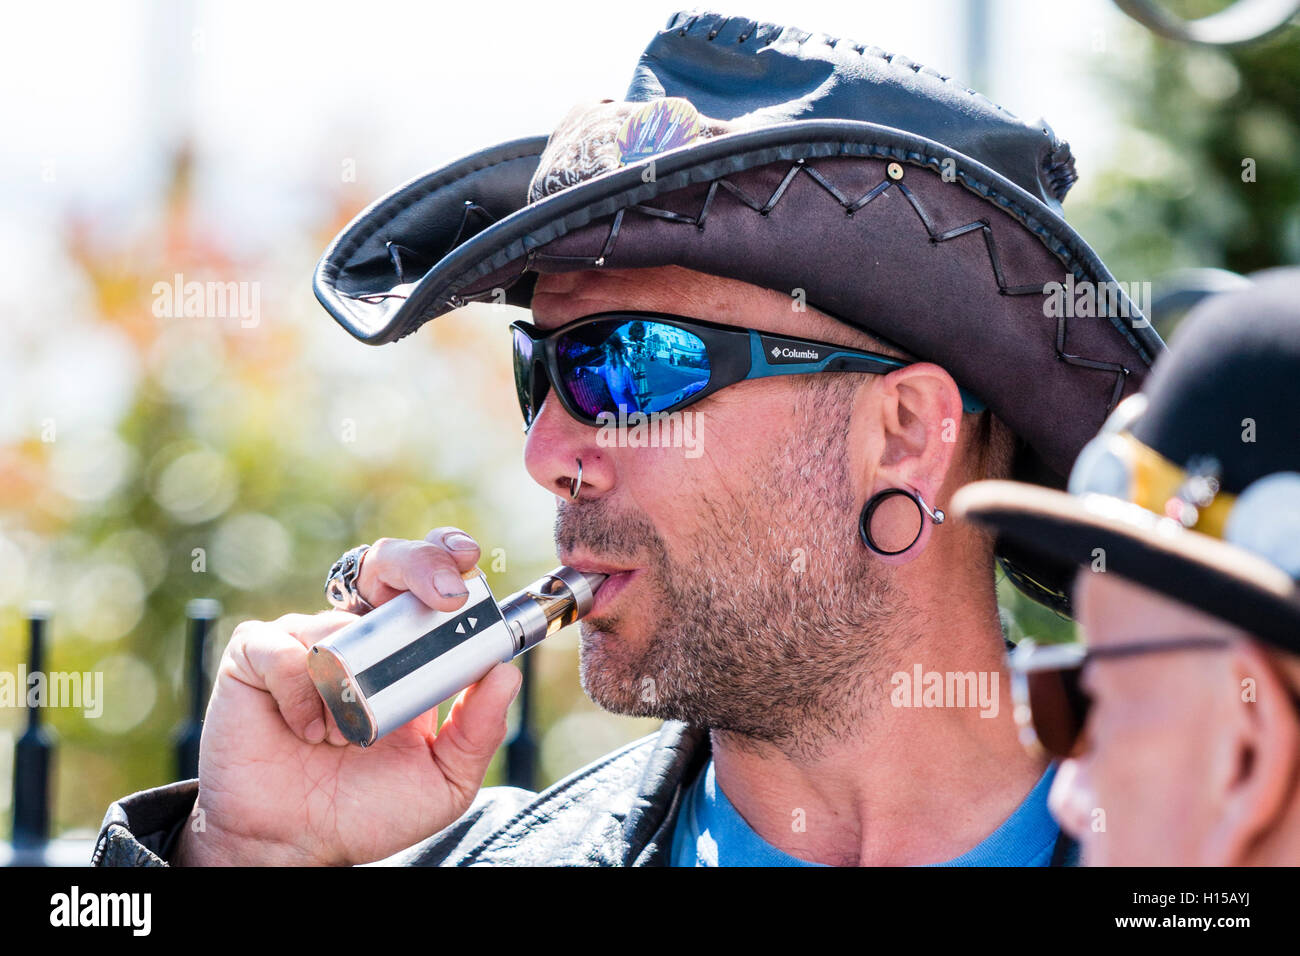 Homme de race blanche, et non rasé wearing cowboy hat et lunettes de soleil, de prendre une bouffée d'un e-cigarette, vape stylo. Tourné la tête et des épaules, vue de côté. Banque D'Images